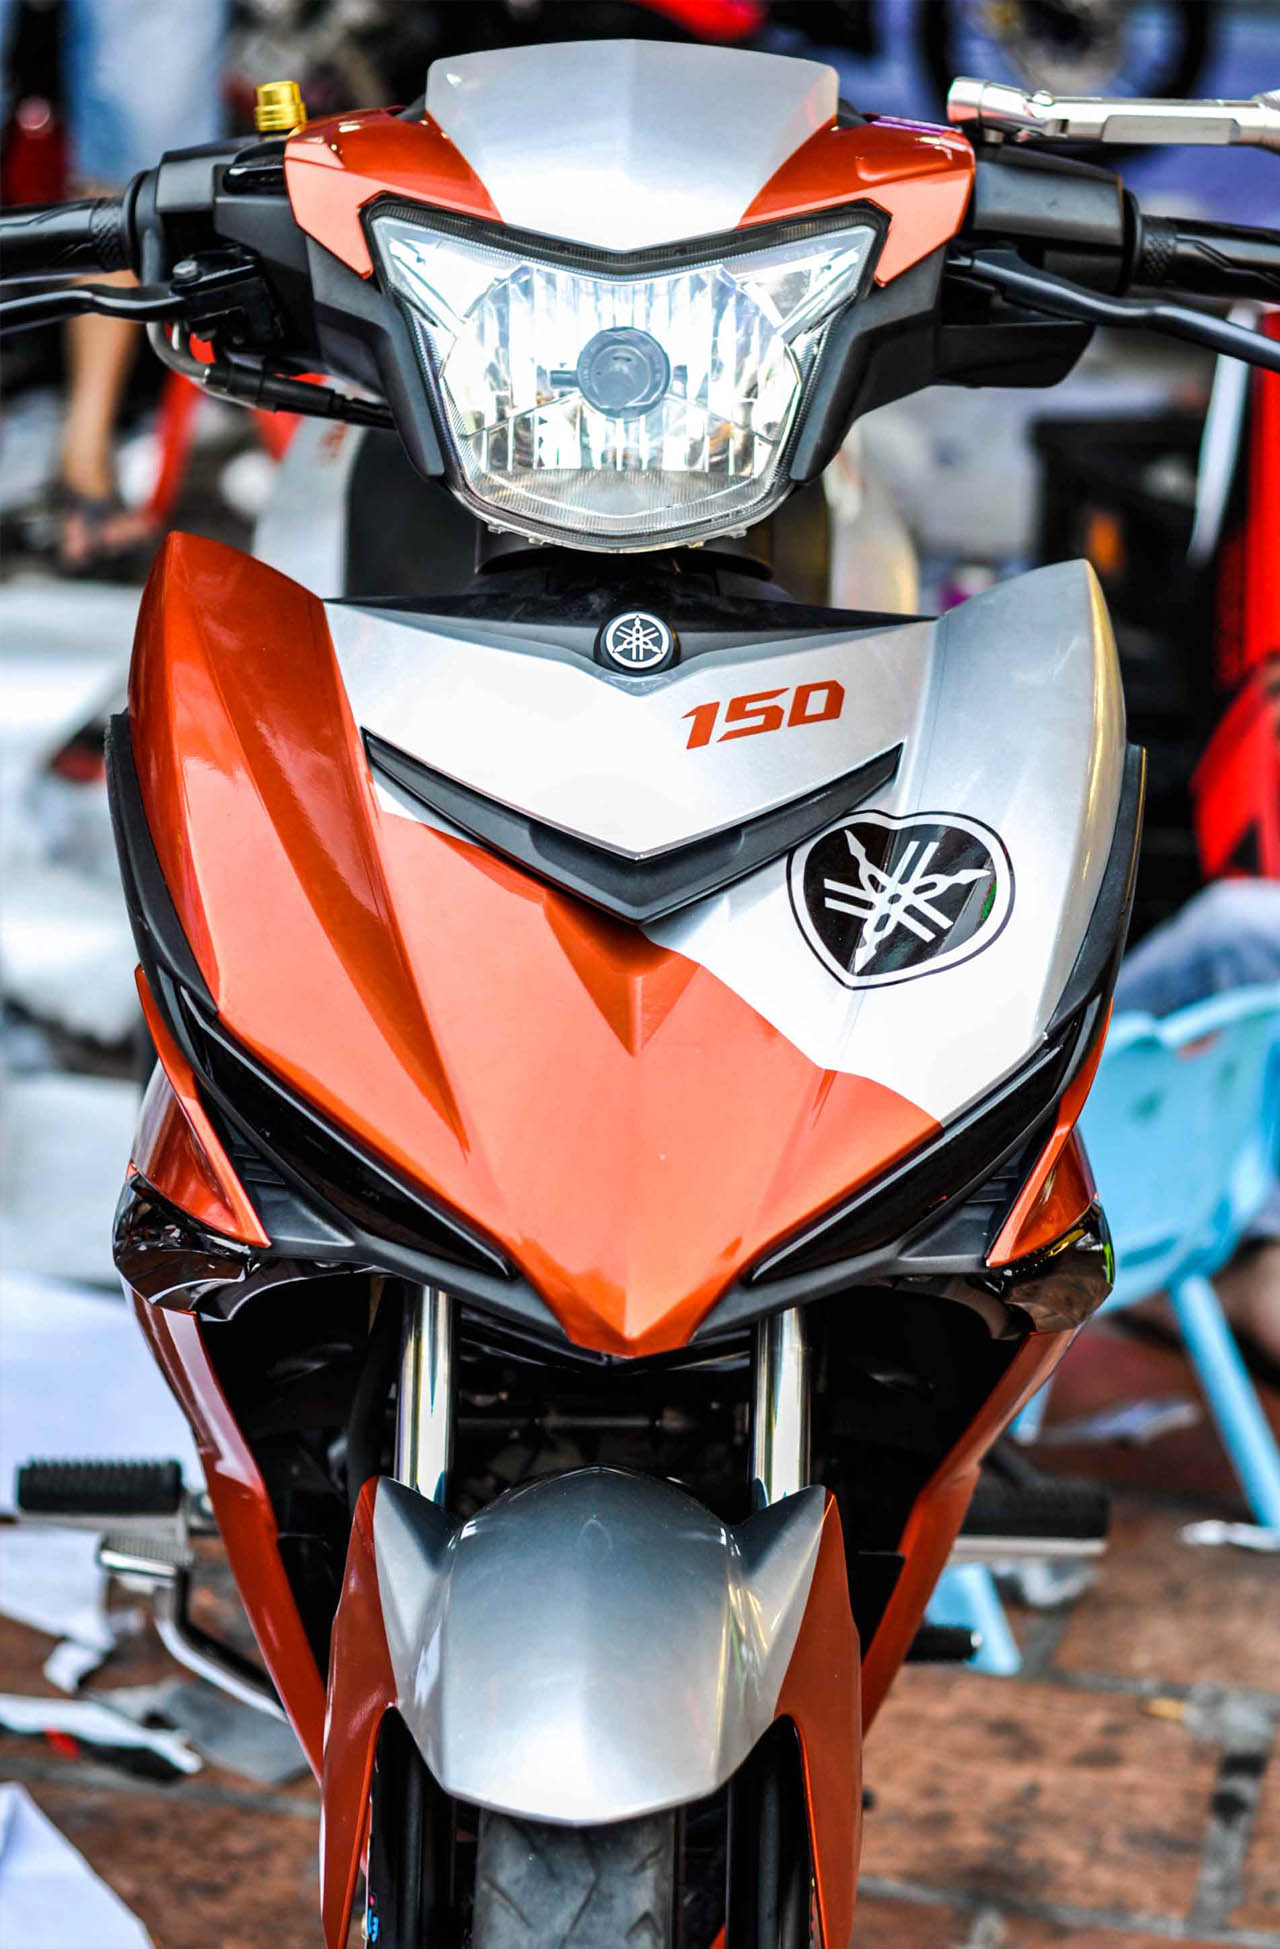 Tem Xe Exciter 150 Màu Cam Phong Cách Thể Thao  Chợ Moto  Mua bán rao vặt  xe moto pkl xe côn tay moto phân khối lớn moto pkl ô tô xe hơi